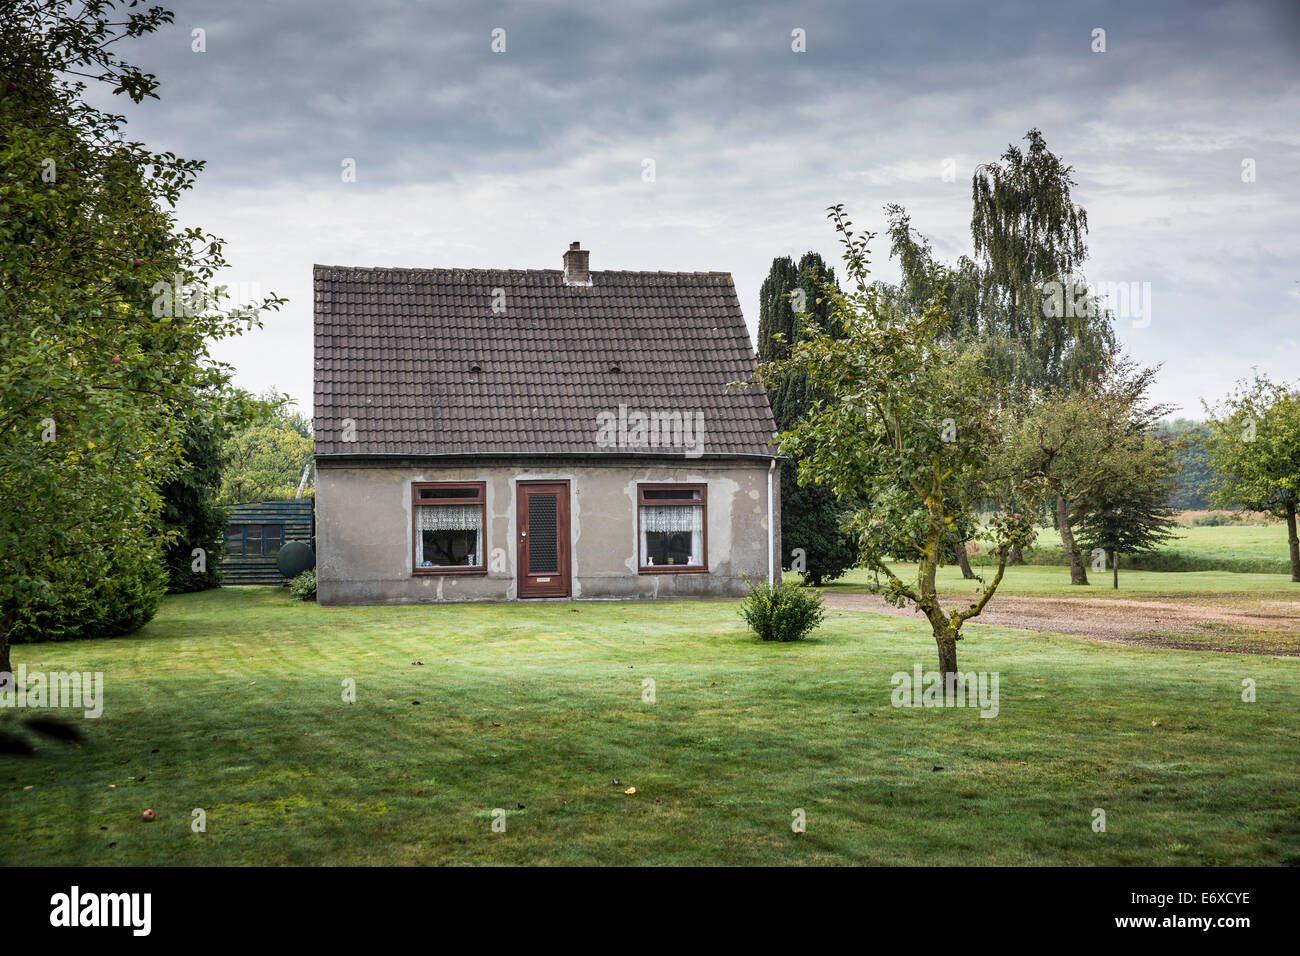 Pays-bas, Nuenen, Vincent van Gogh. Ancienne maison où vivaient les modèles pour les mangeurs de pommes de terre, qu'il peint dans son atelier Banque D'Images